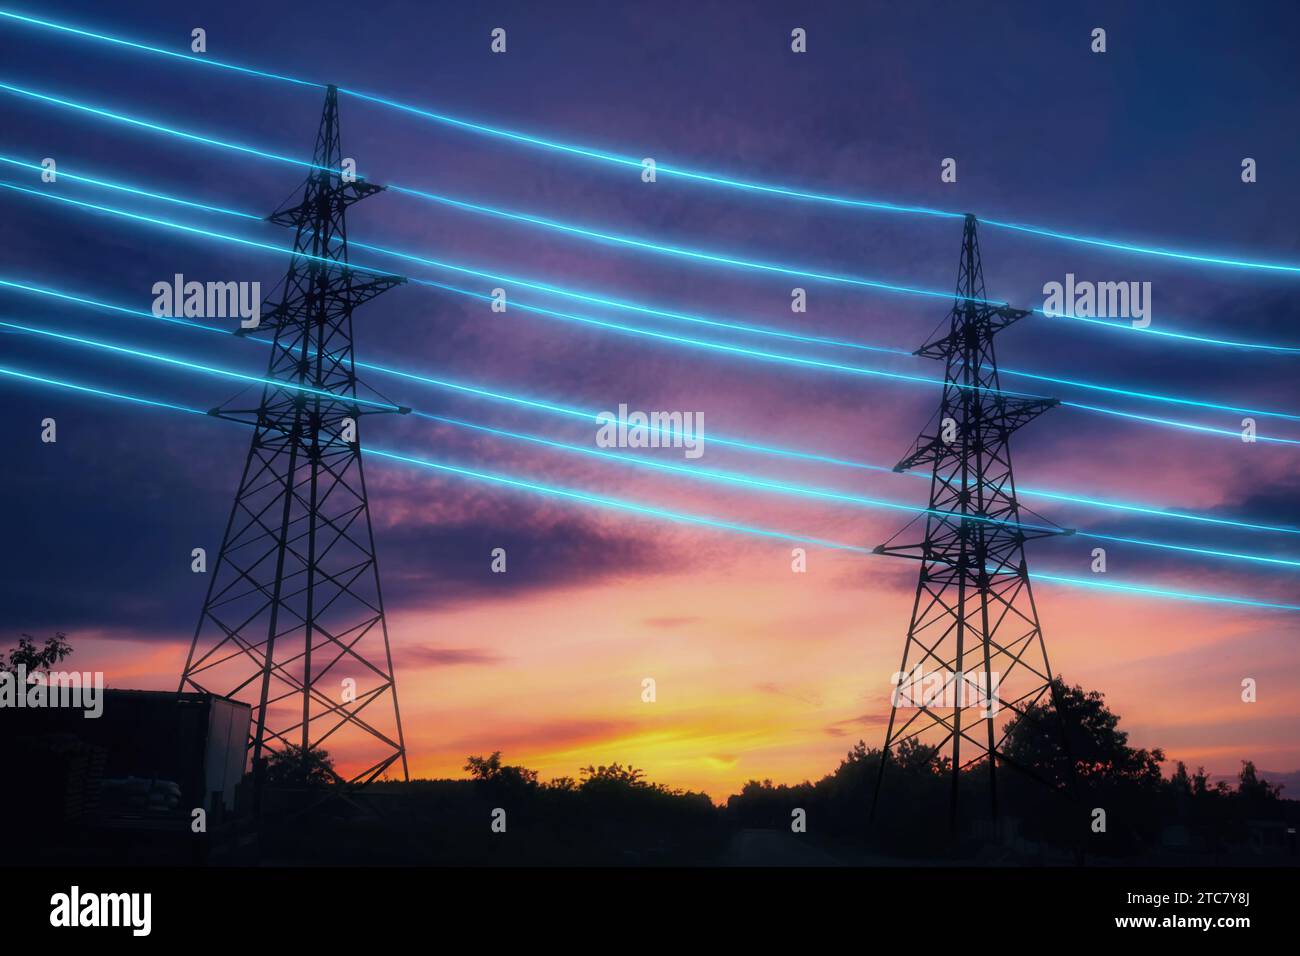 Stromübertragungstürme mit orange leuchtenden Drähten, der Sternenhimmel. Energieinfrastrukturkonzept. Stockfoto